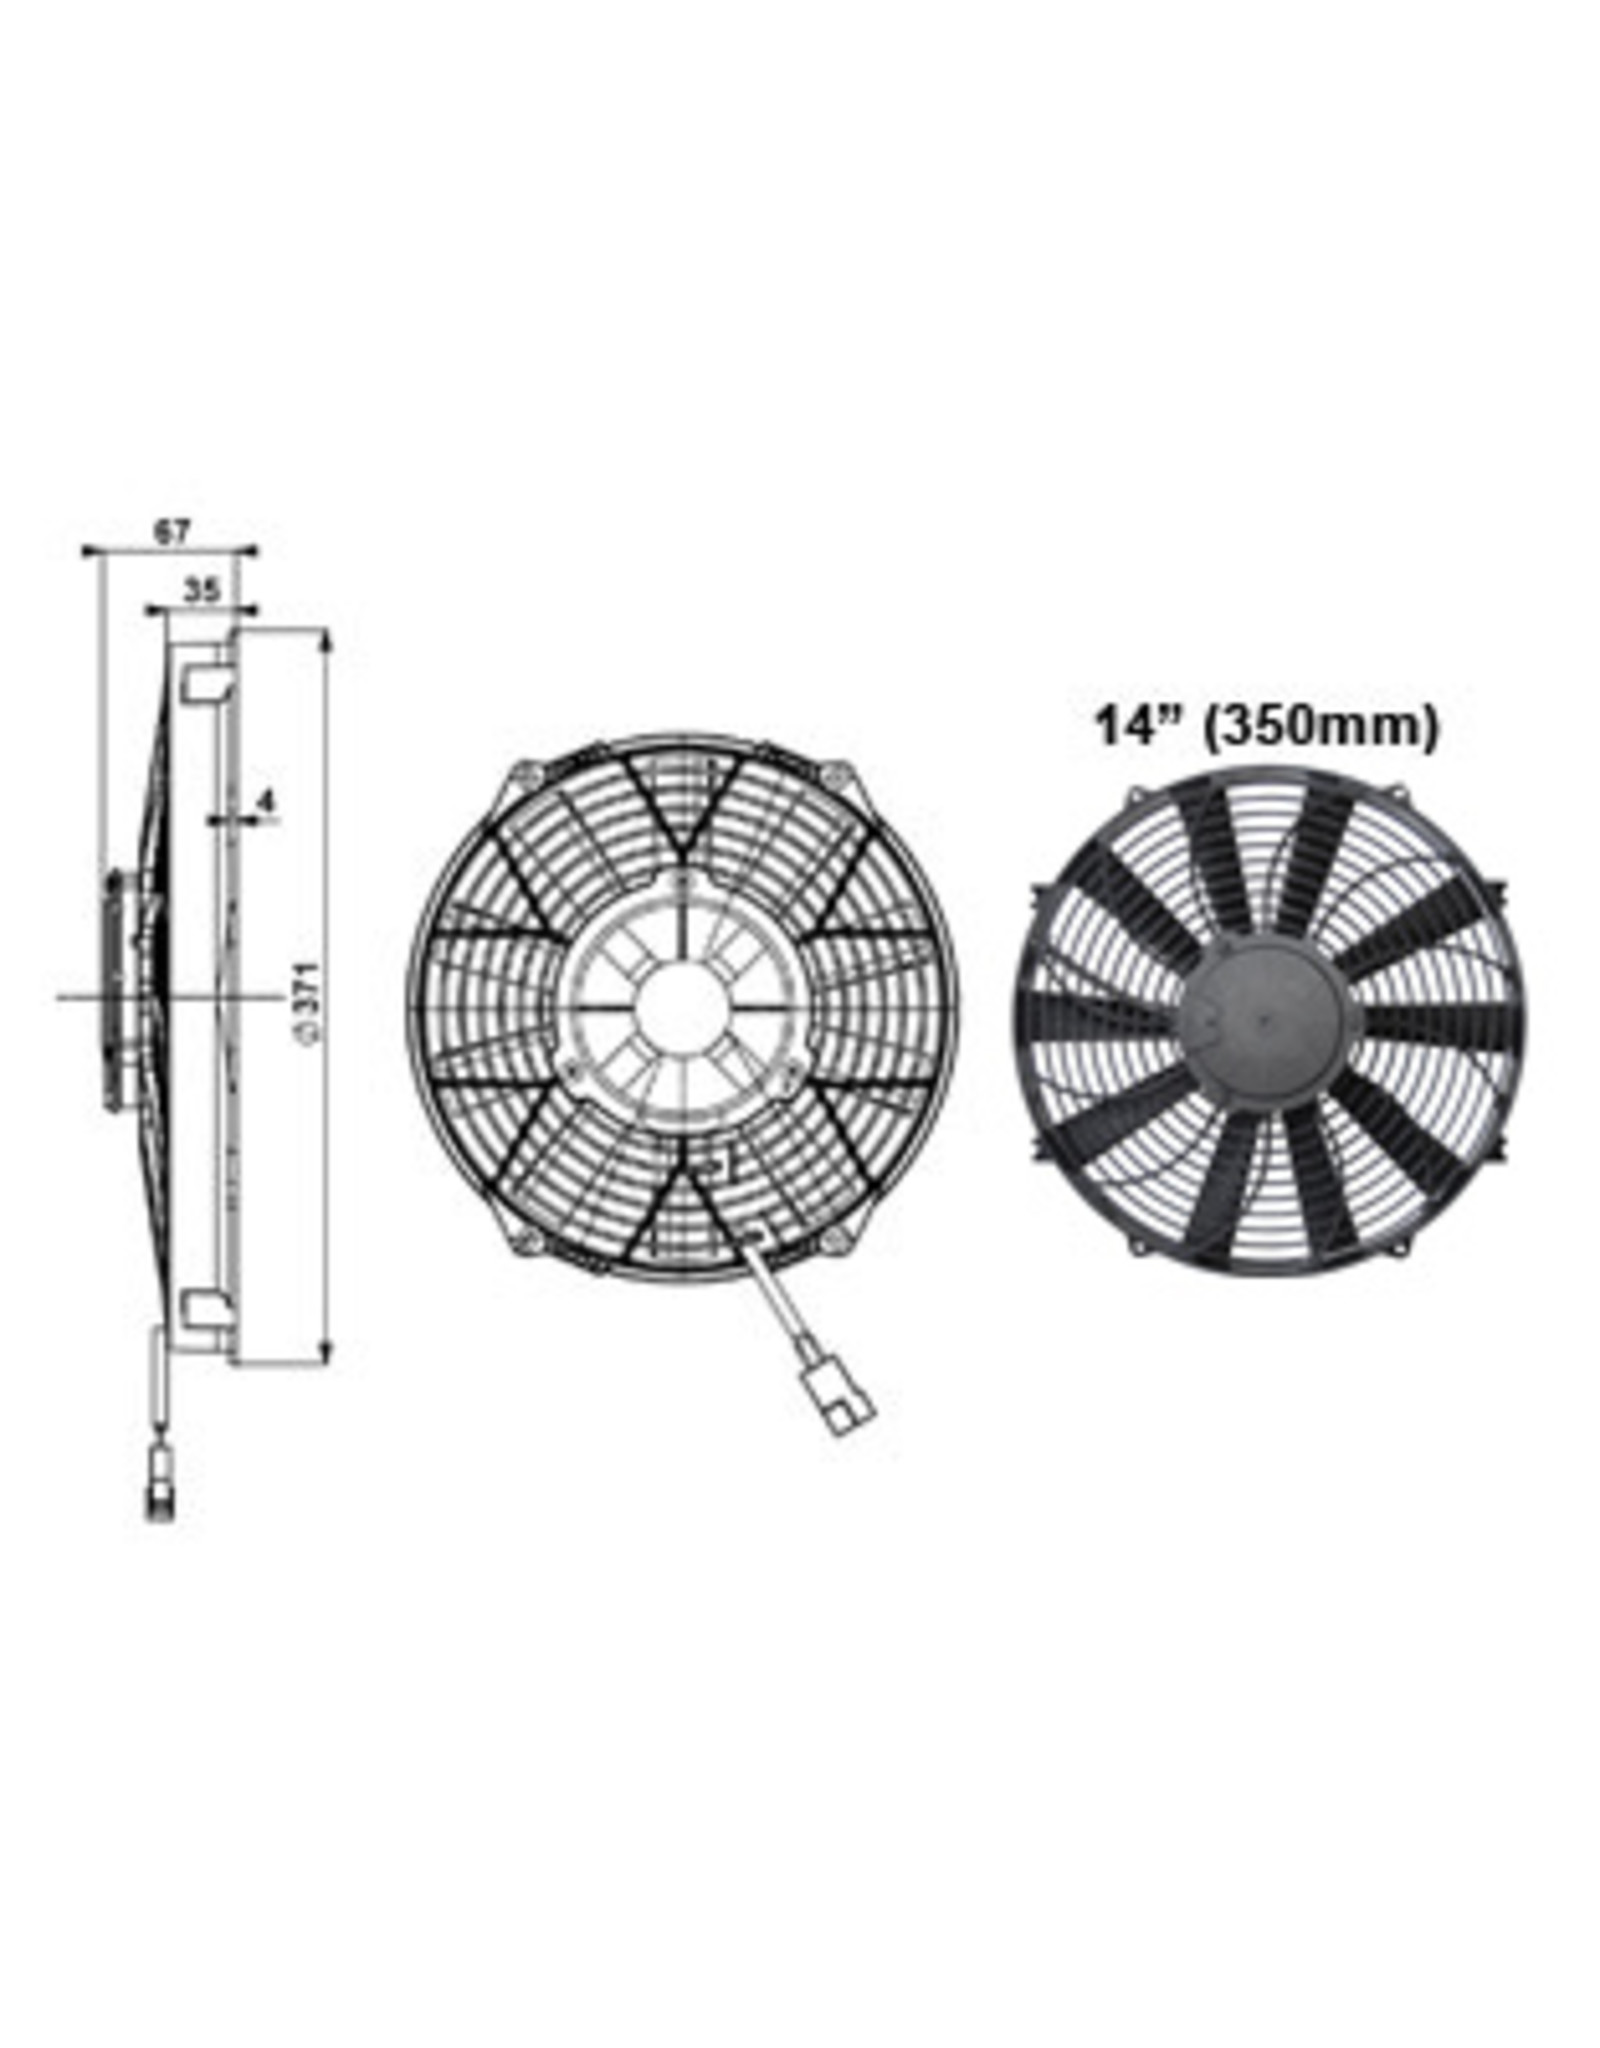 Comex Cooling Fan 14" (350mm) Pusher/Blower Fan